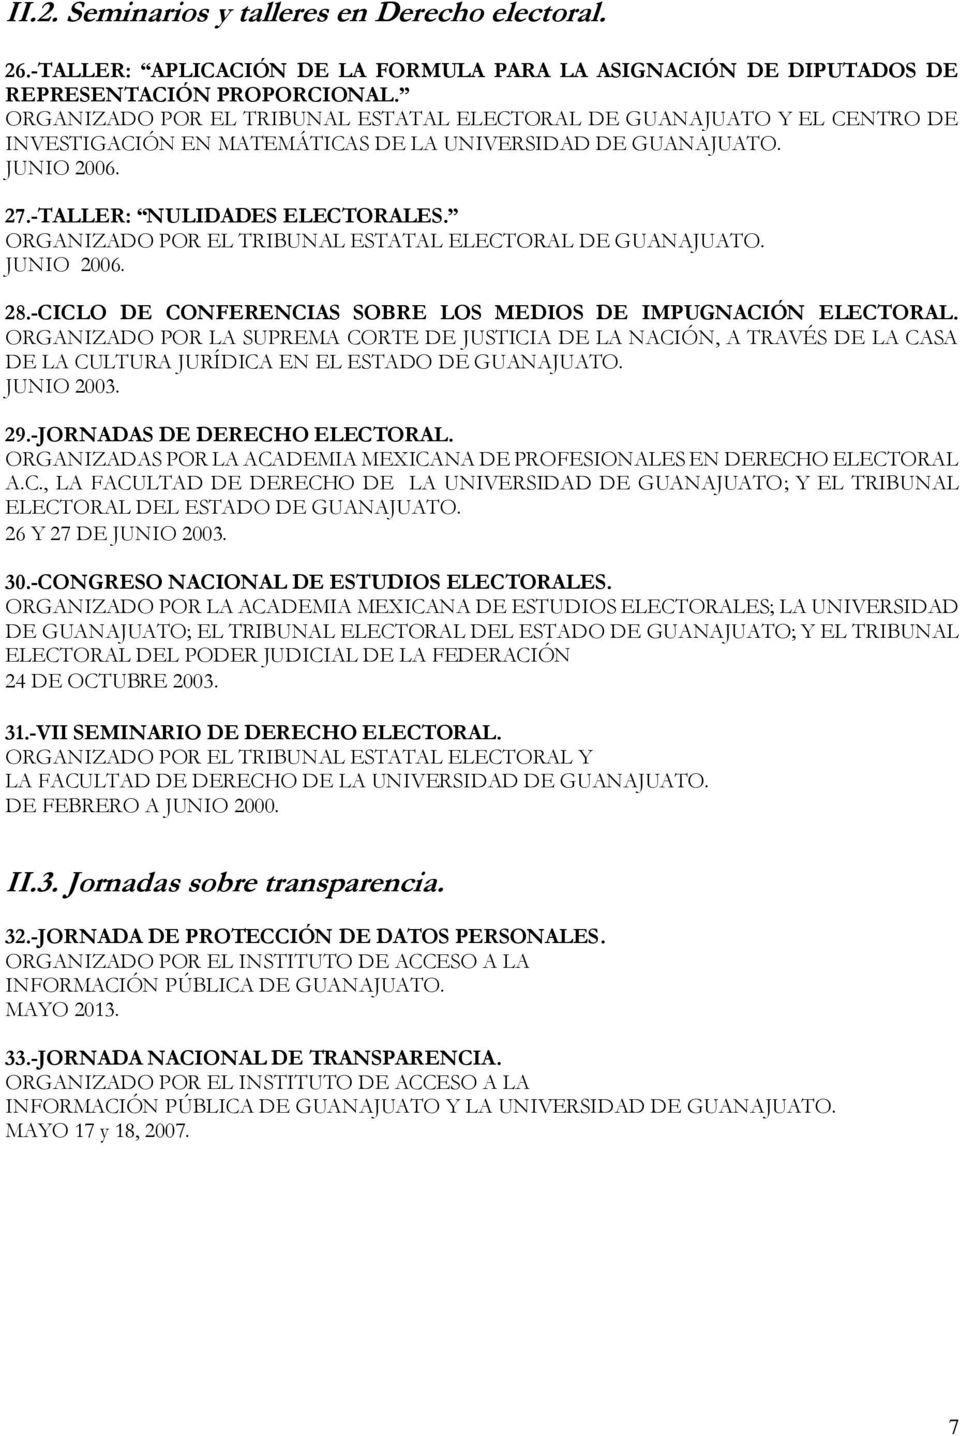 ORGANIZADO POR EL TRIBUNAL ESTATAL ELECTORAL DE GUANAJUATO. JUNIO 2006. 28.-CICLO DE CONFERENCIAS SOBRE LOS MEDIOS DE IMPUGNACIÓN ELECTORAL.